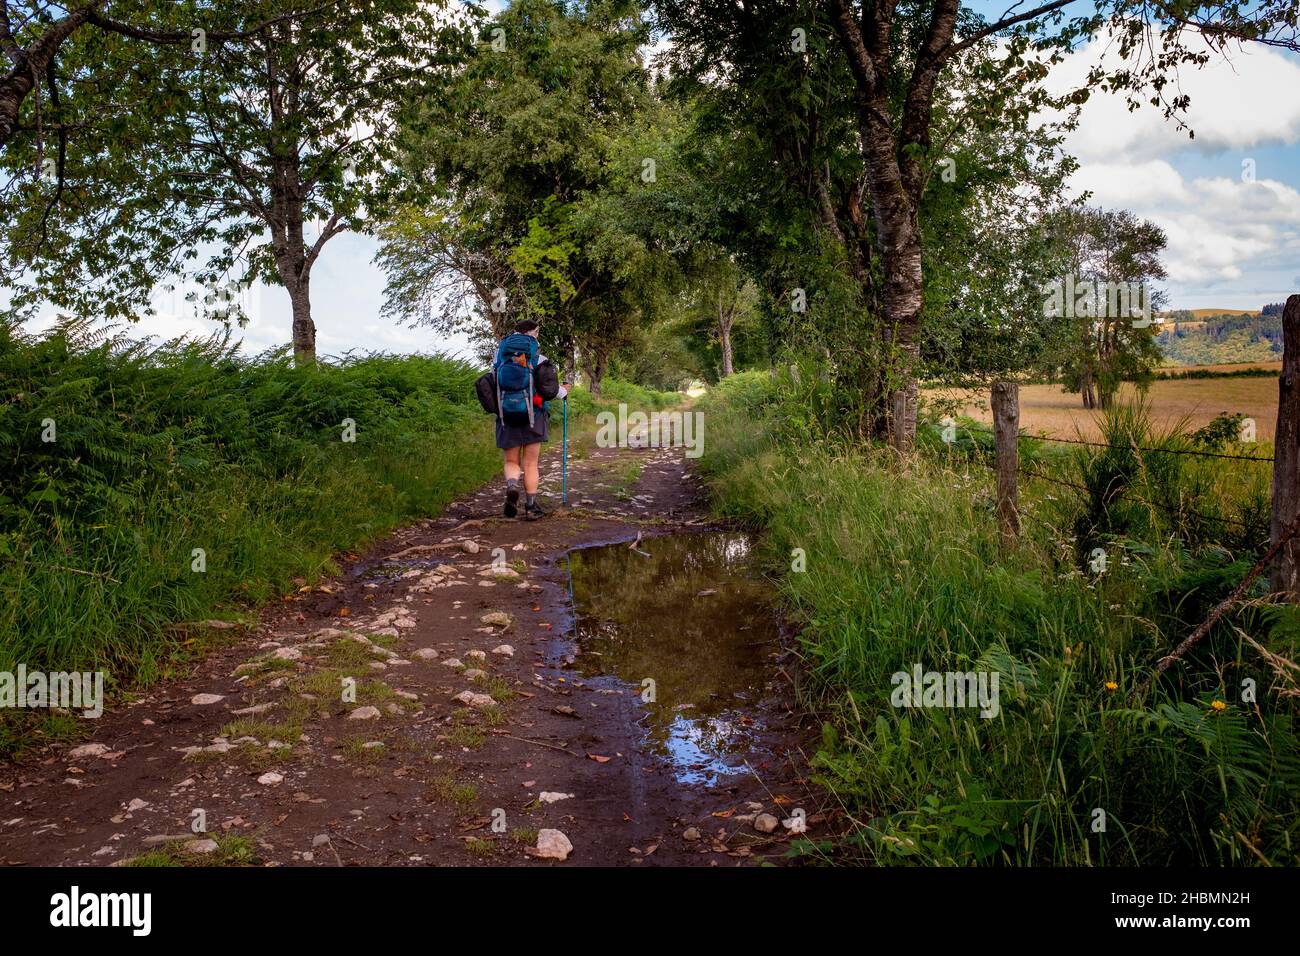 Espalion, Francia - 16 de julio de 2021: Un excursionista caminando por el camino de Santiago en Francia durante un día de verano parcialmente soleado en un sendero bordeado de árboles. Foto de stock